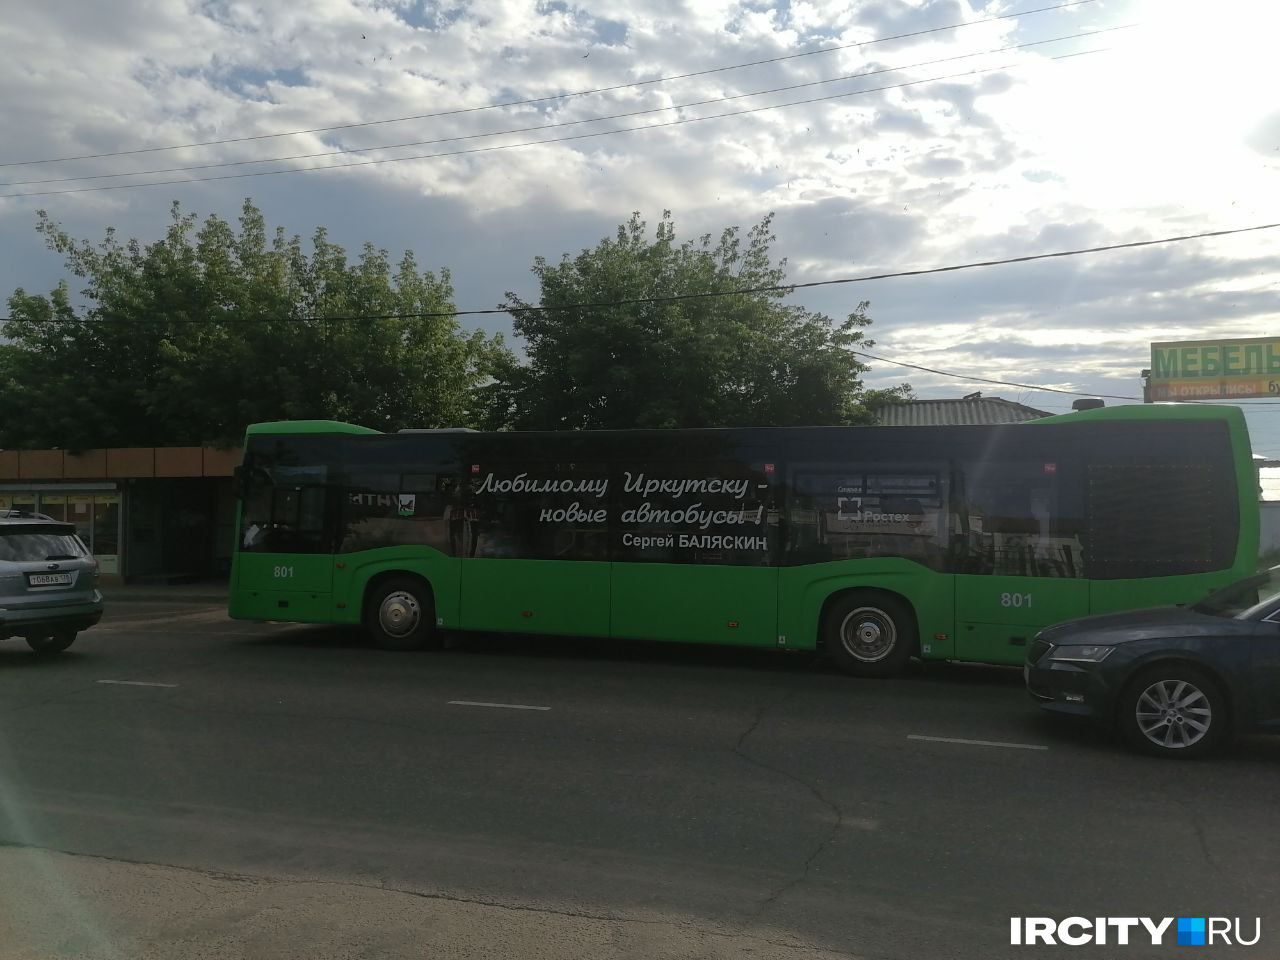 Такие автобусы можно увидеть на улицах Иркутска